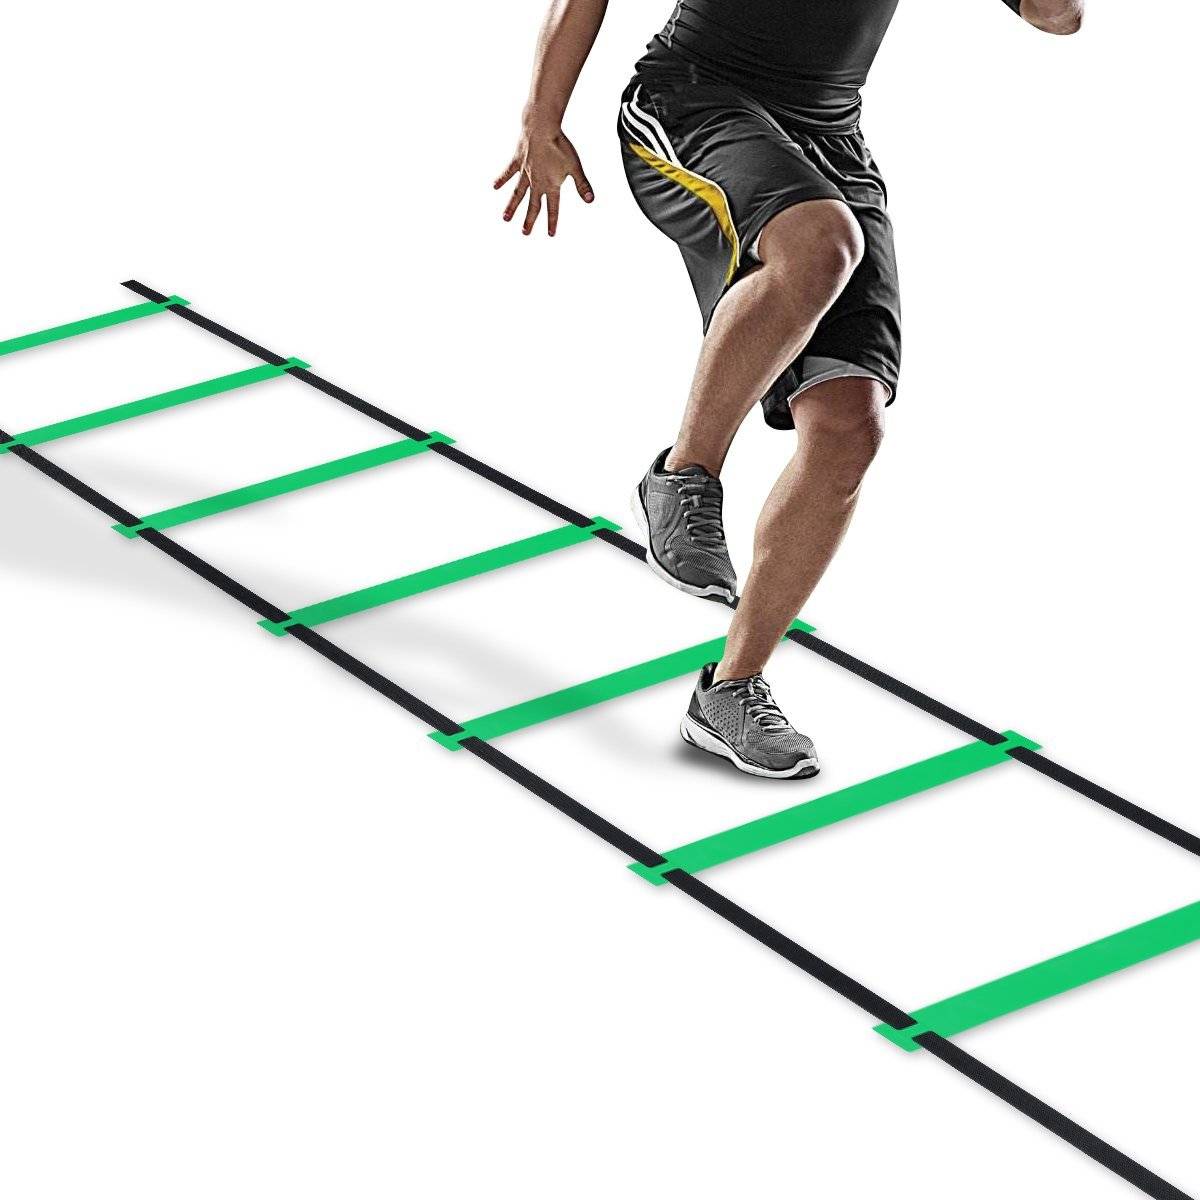 Координационная лестница — для чего нужна + комплекс упражнений